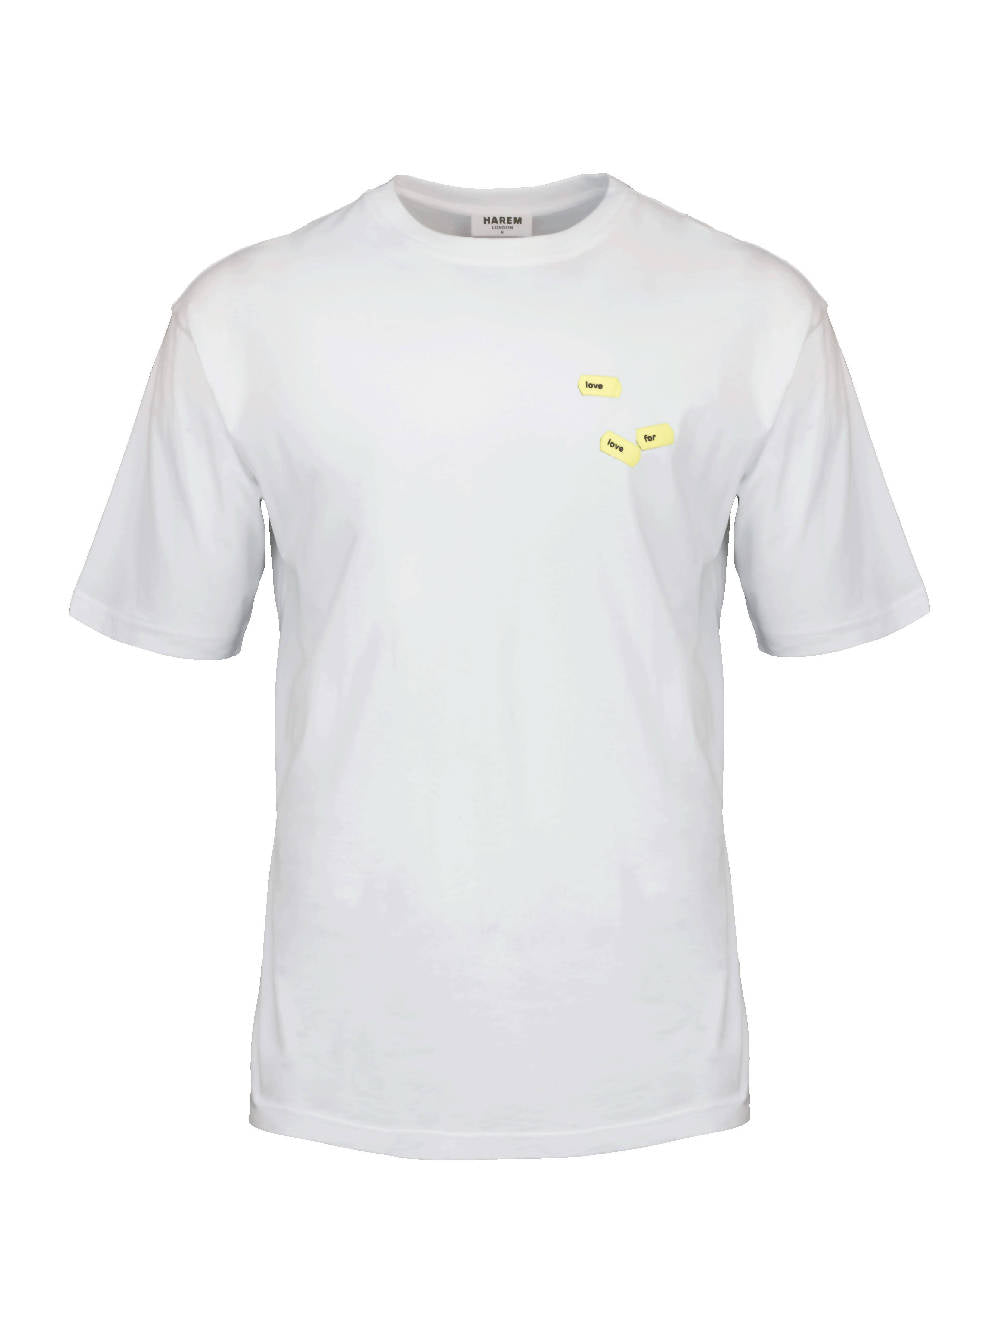 harem london White Organic Love T-shirt